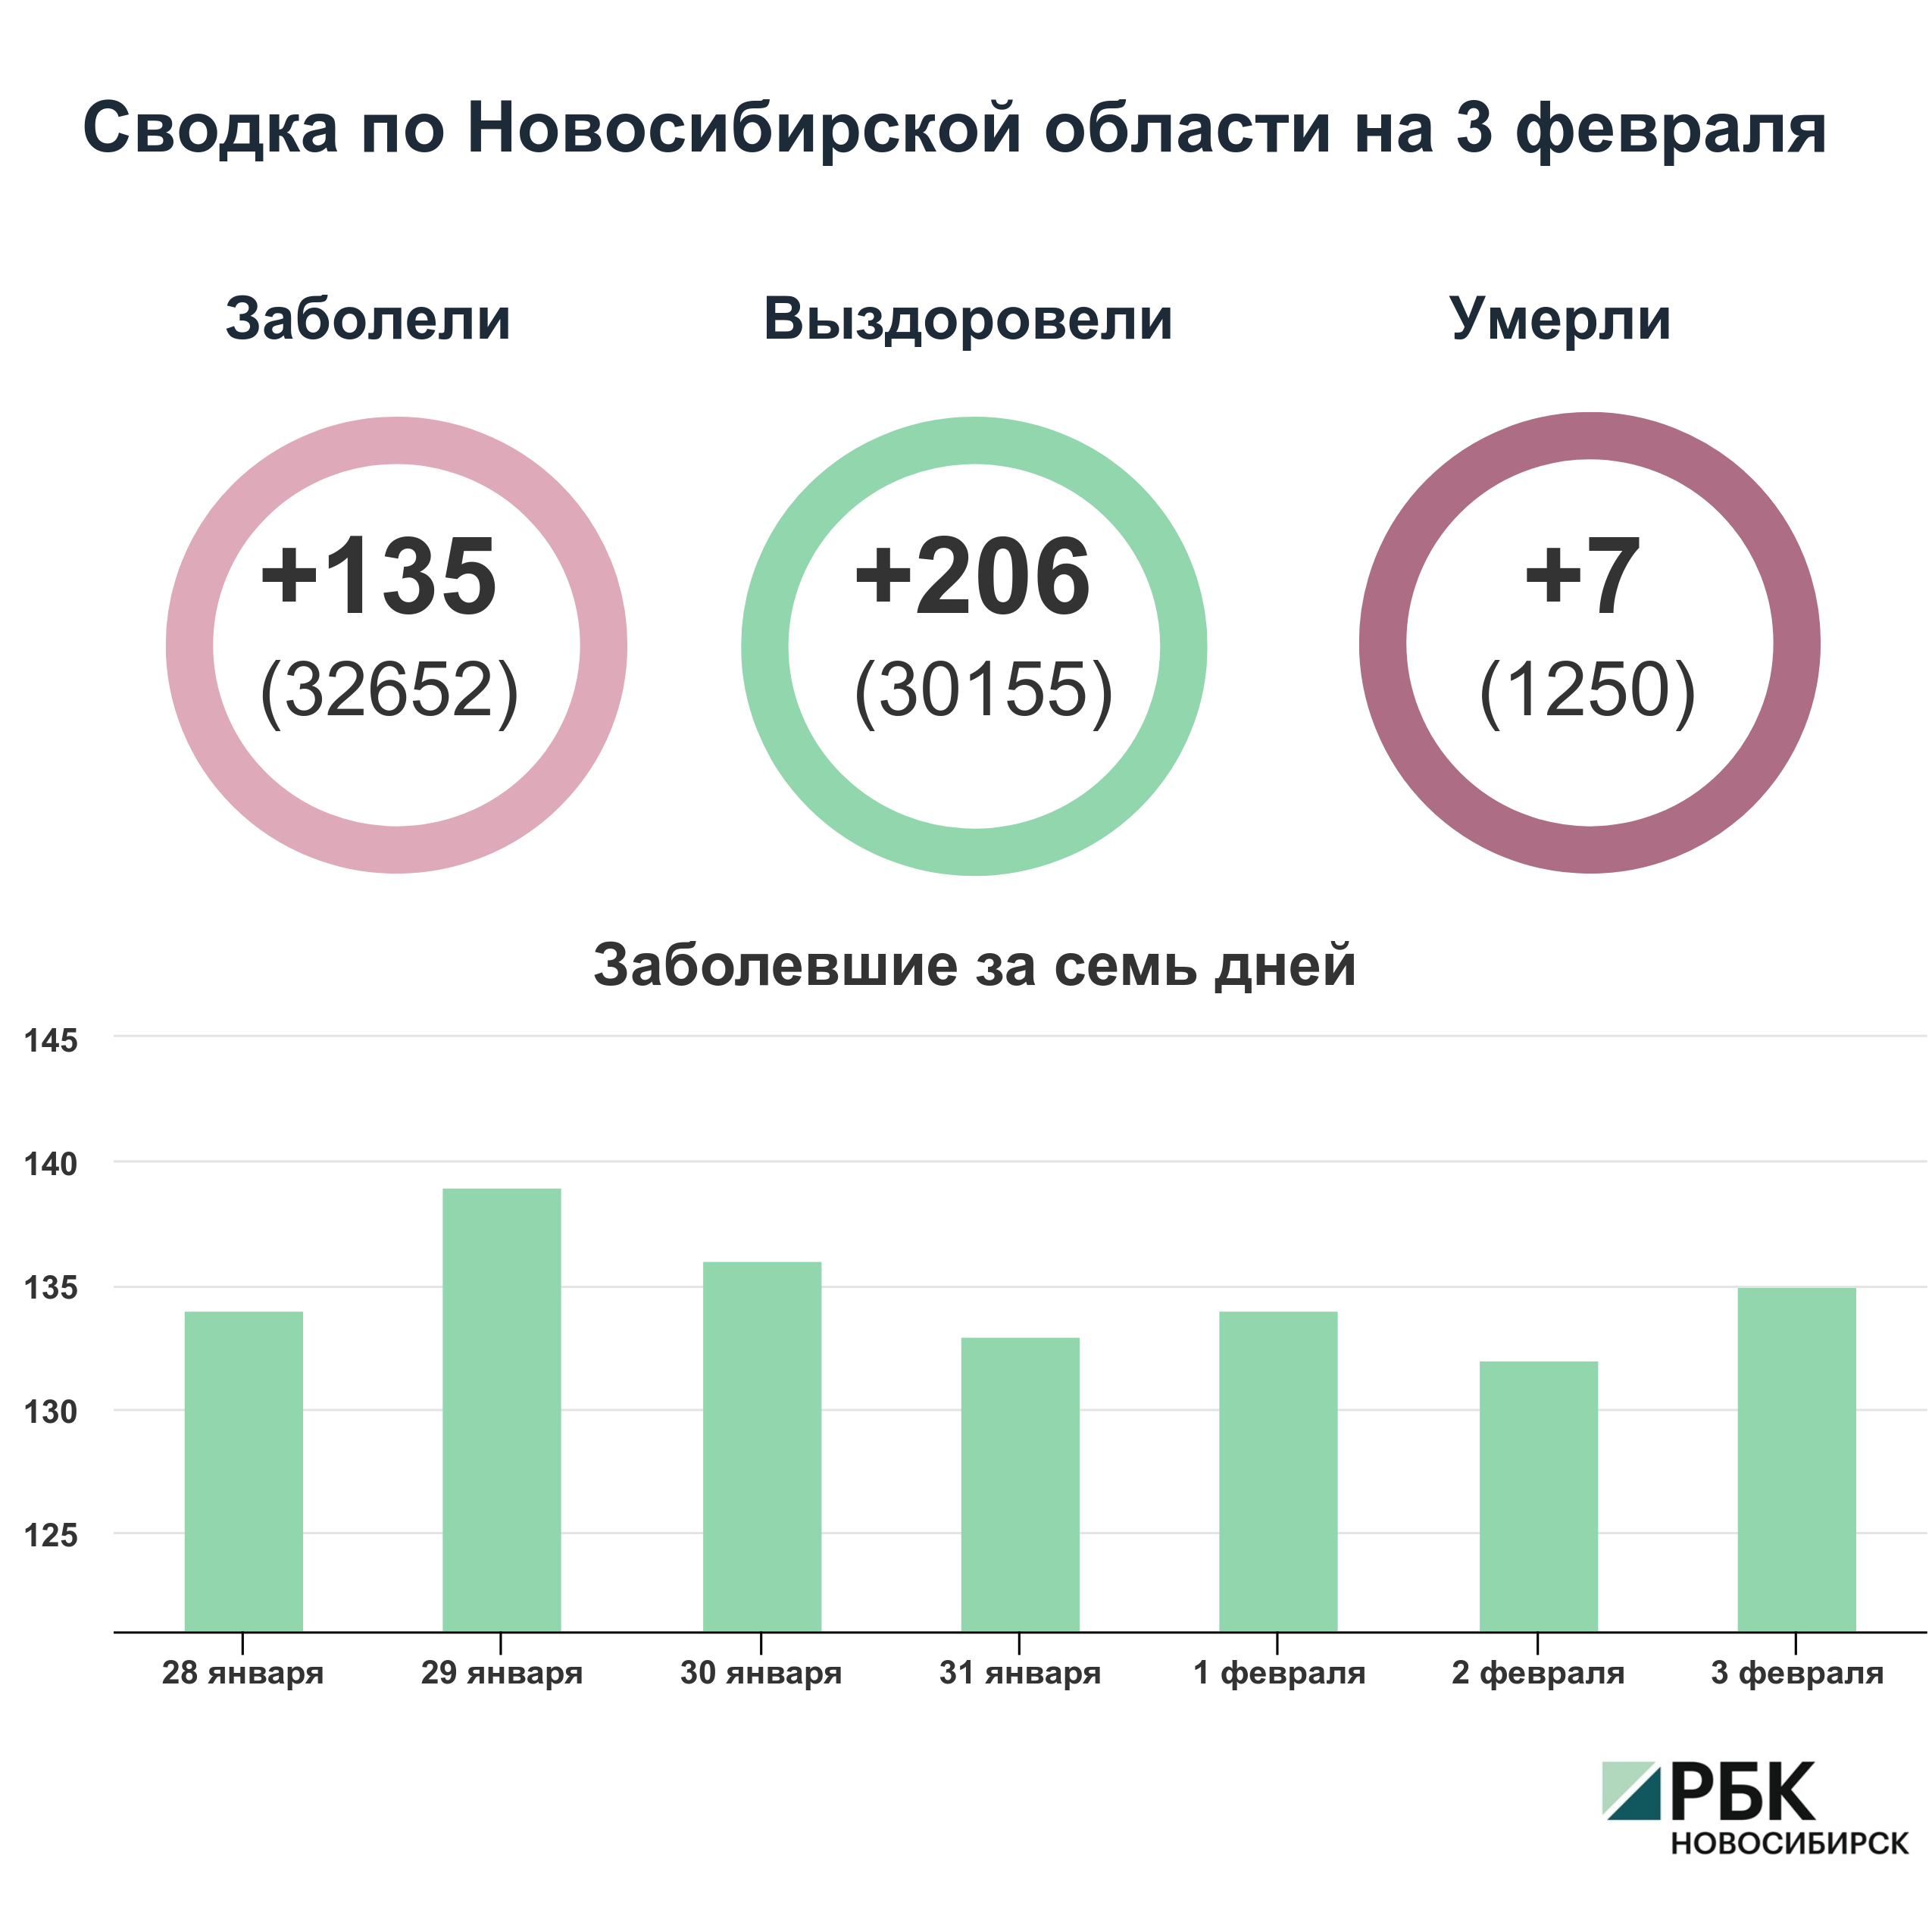 Коронавирус в Новосибирске: сводка на 3 февраля